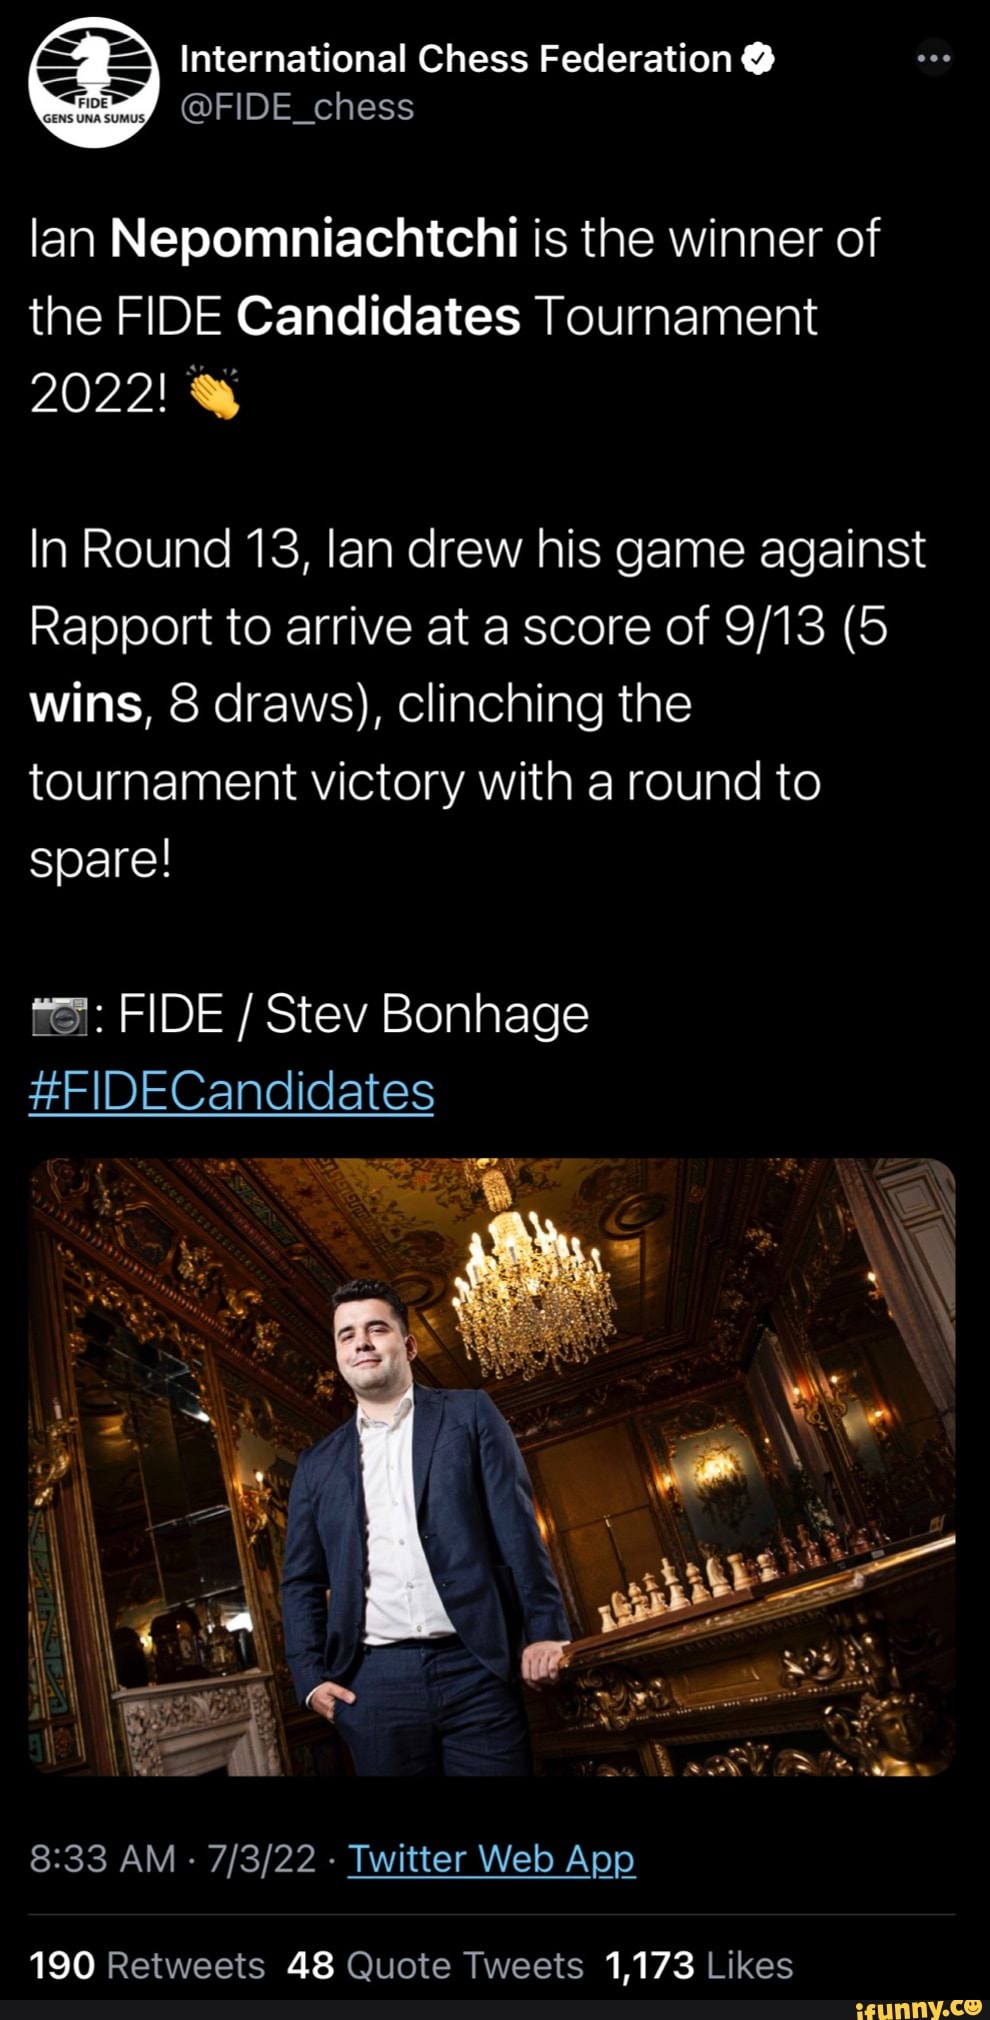 FIDE Candidates 2022, Round 13